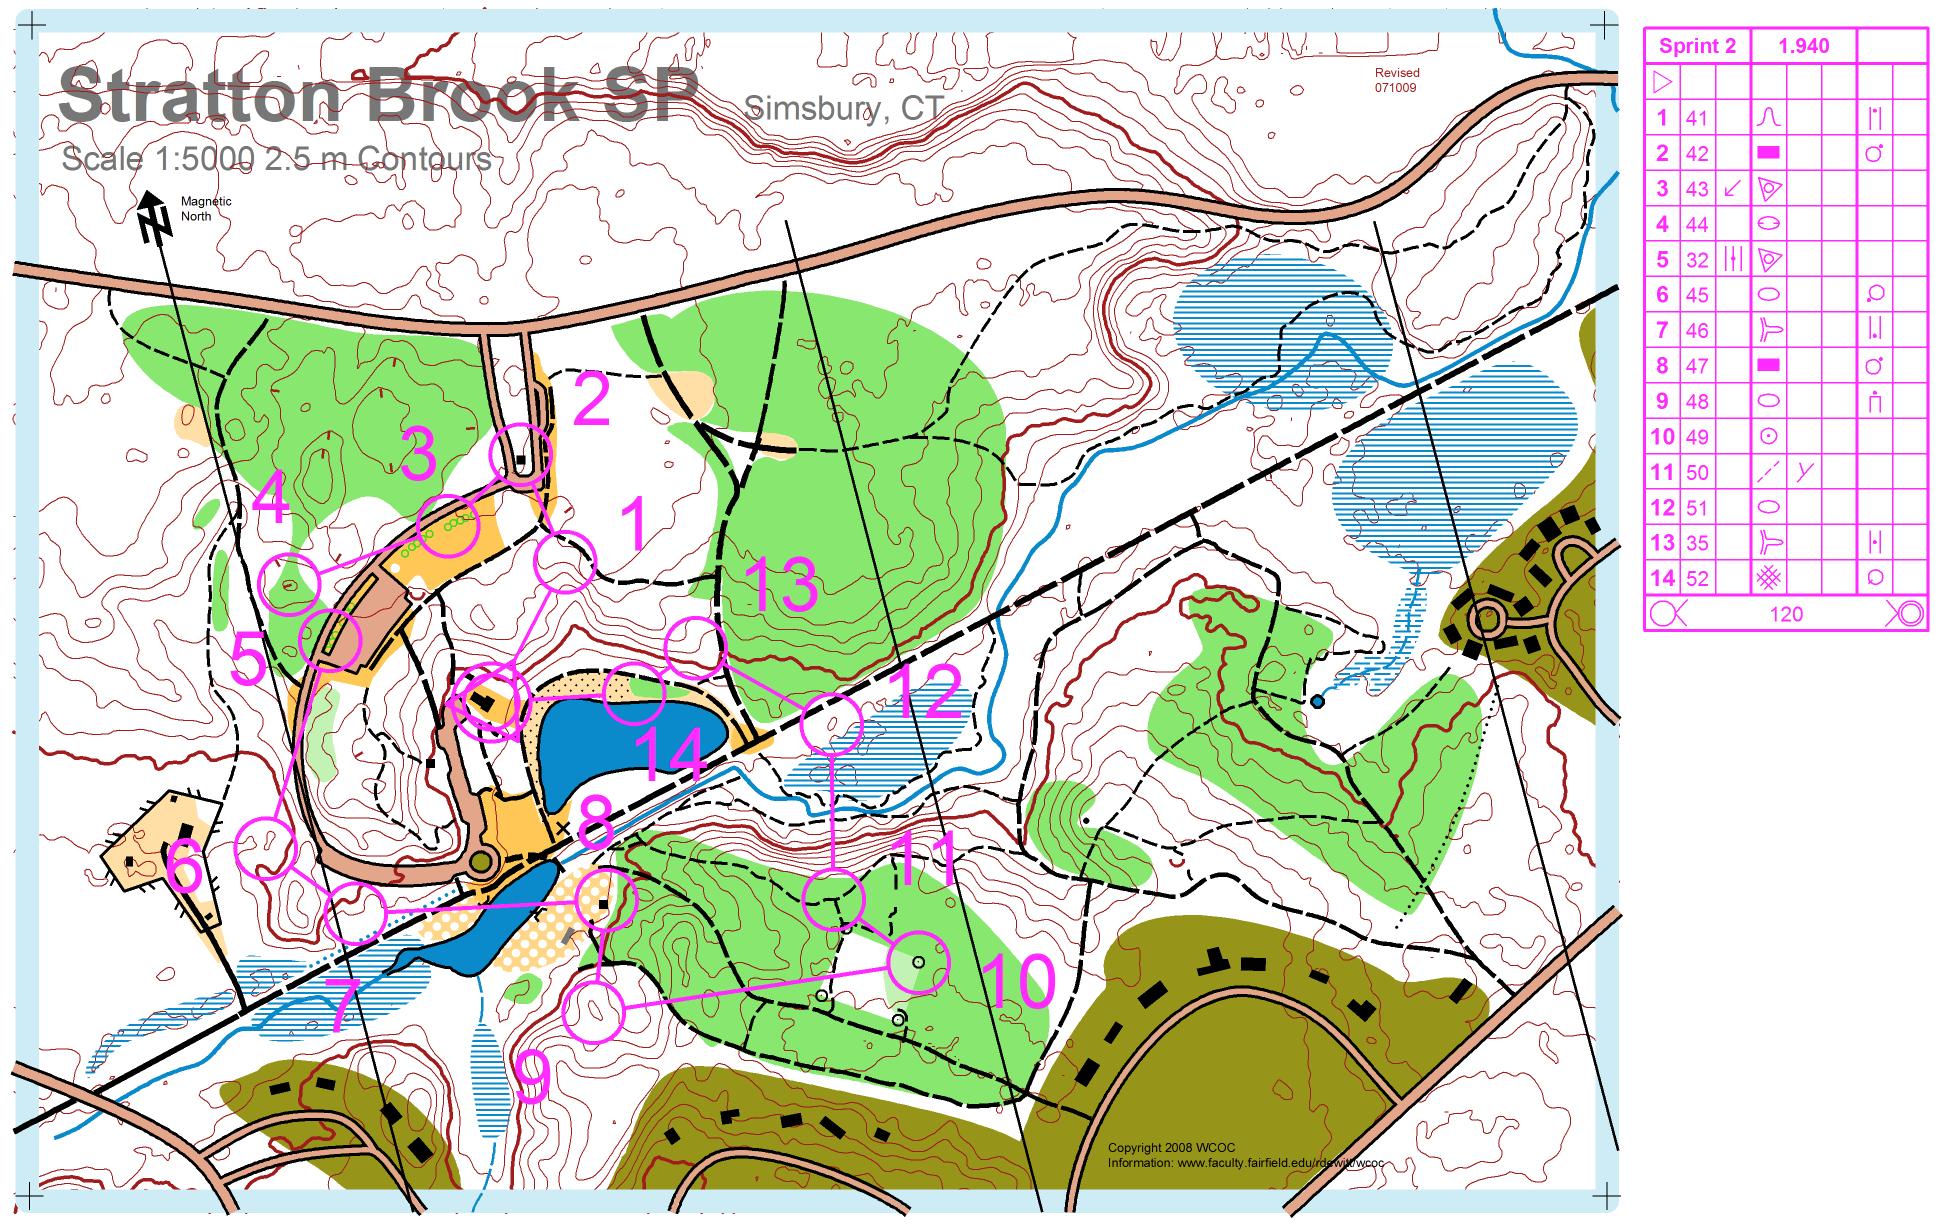 Stratton Brook Sprint 2 (2009-09-16)